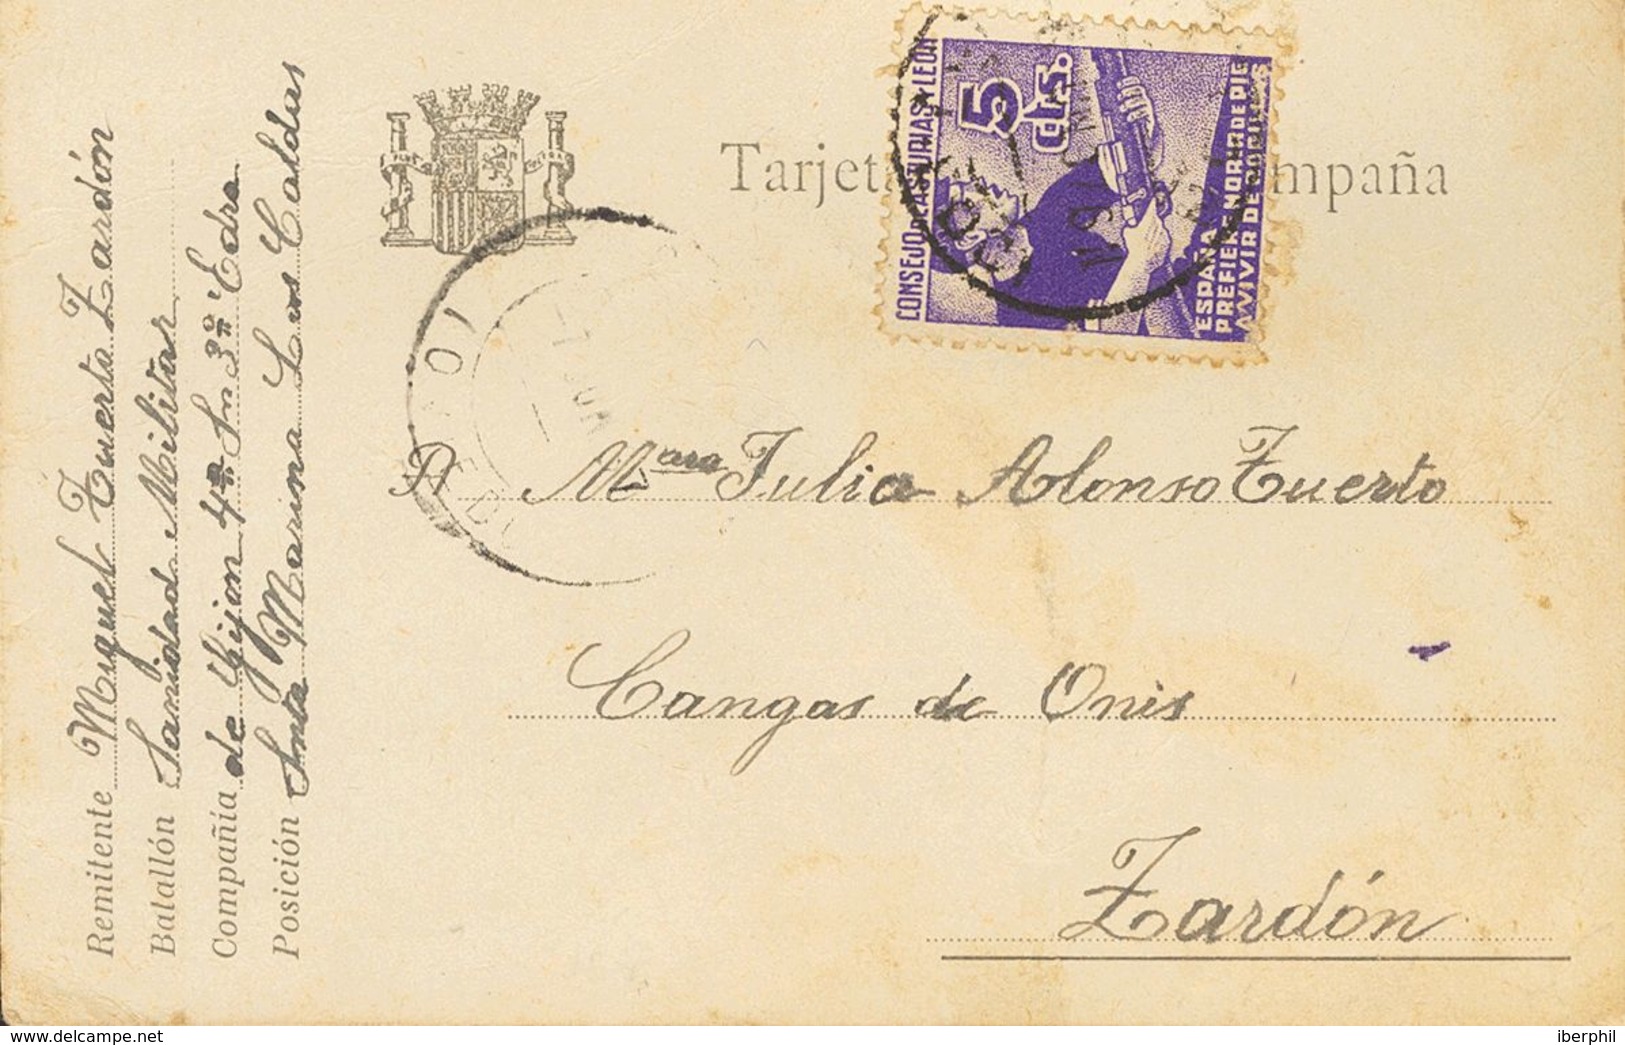 España. Asturias Y León. Sobre 2. 1937. 5 Cts Violeta. Tarjeta Postal De Campaña De LAS CALDAS A ZARDON. MAGNIFICA. - Asturien & Léon